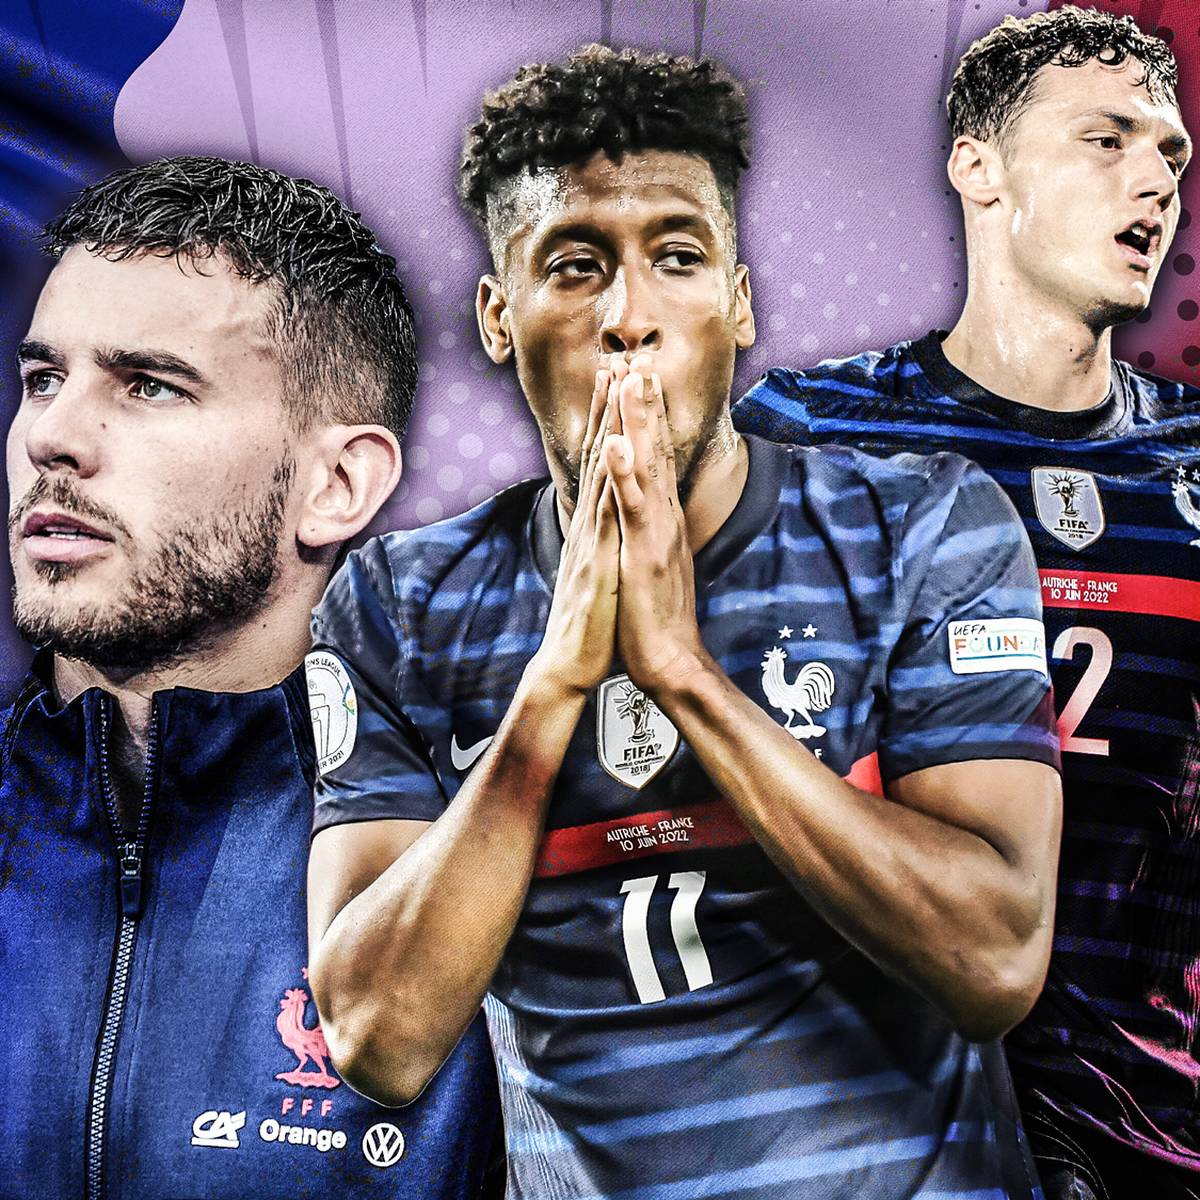 Bayern-Stars in Frankreich in der Kritik